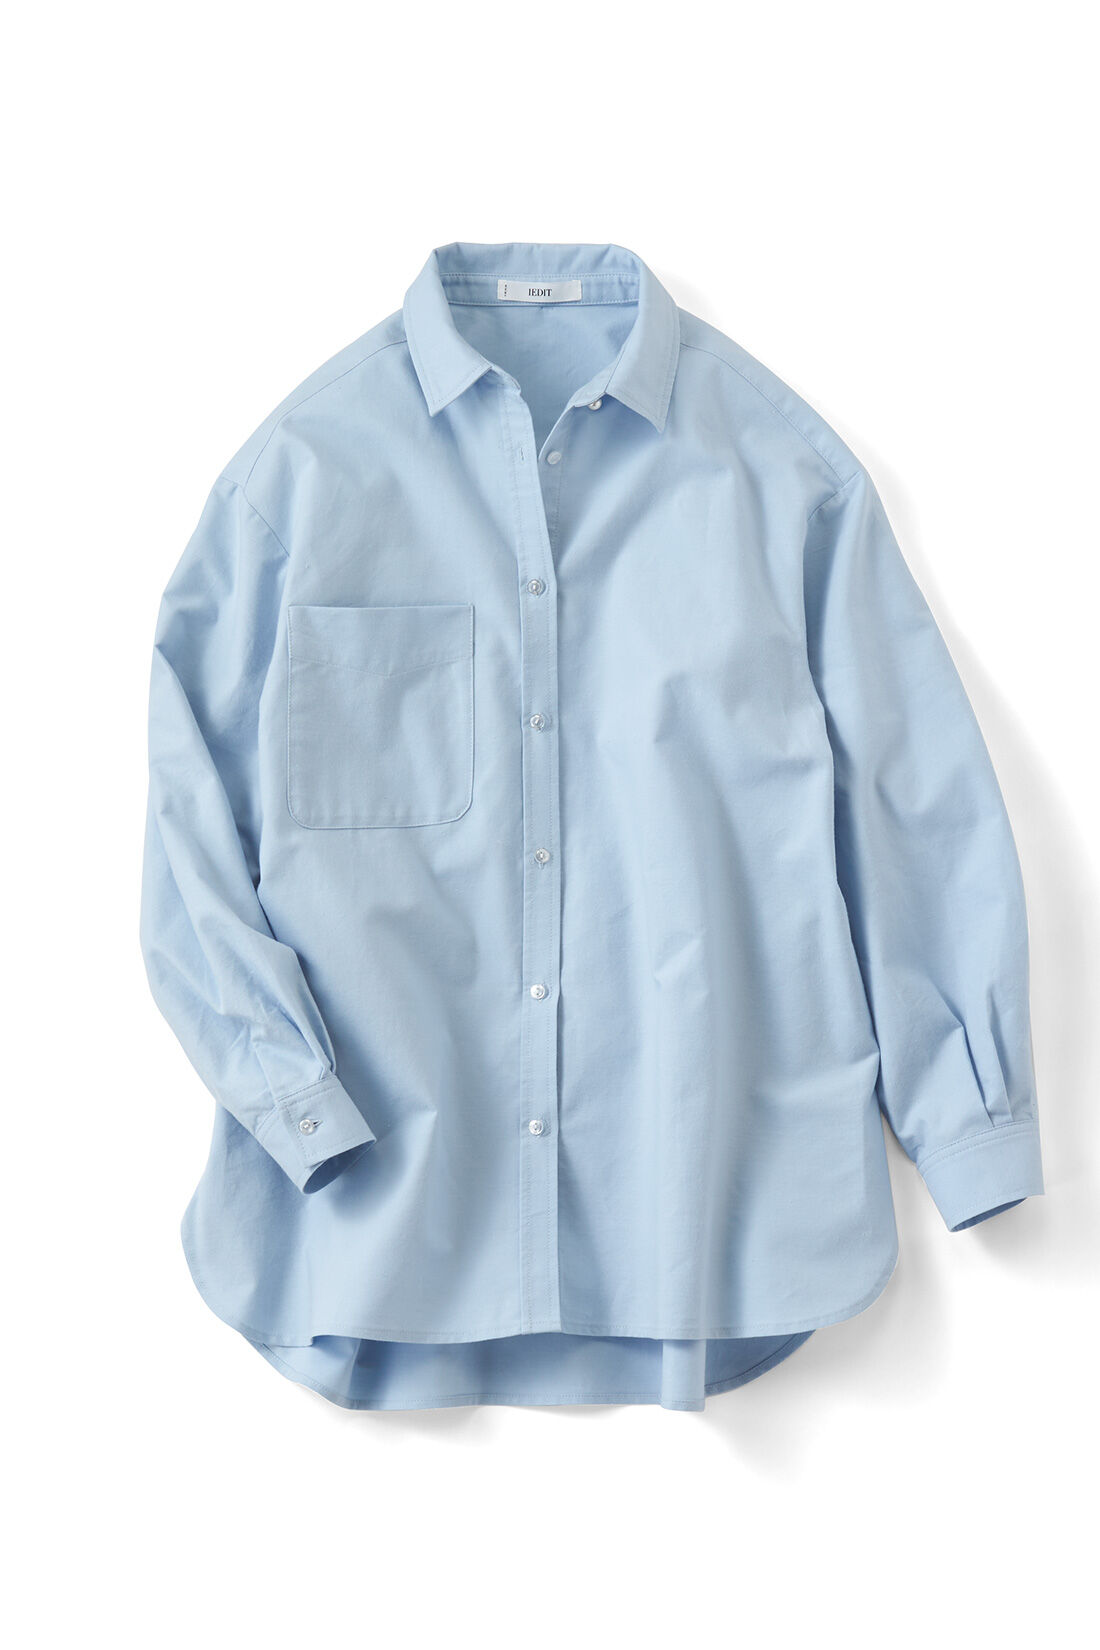 IEDIT|IEDIT[イディット]　バックフレアーデザインがきいた オックスフォード素材のこなれ見えシャツ〈パープル〉|ブルー